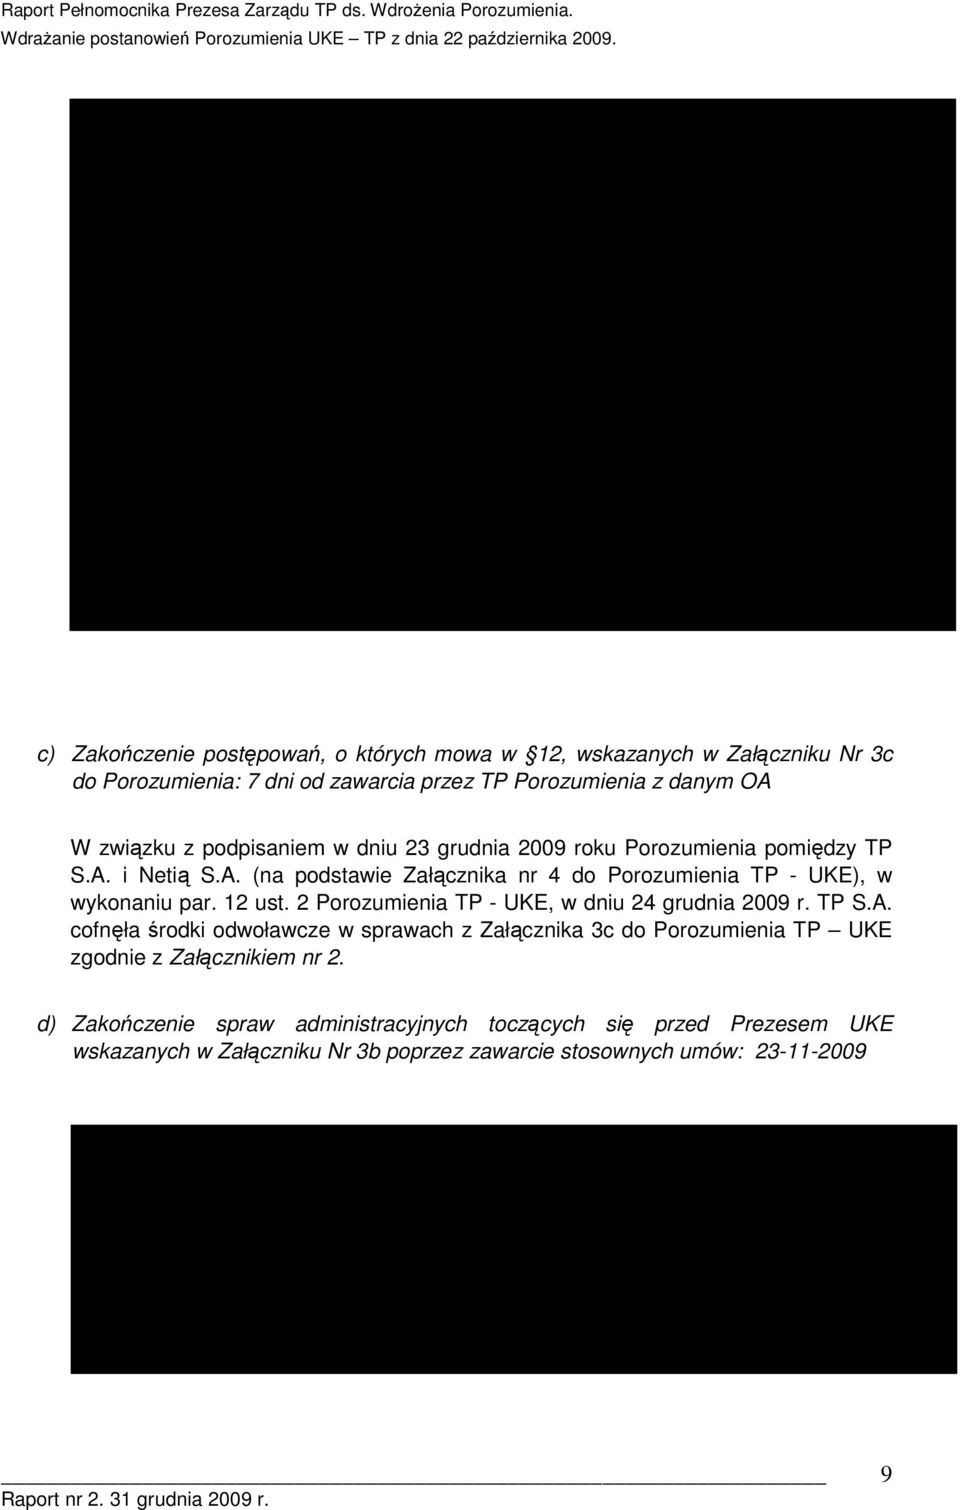 12 ust. 2 Przumienia TP - UKE, w dniu 24 grudnia 2009 r. TP S.A.